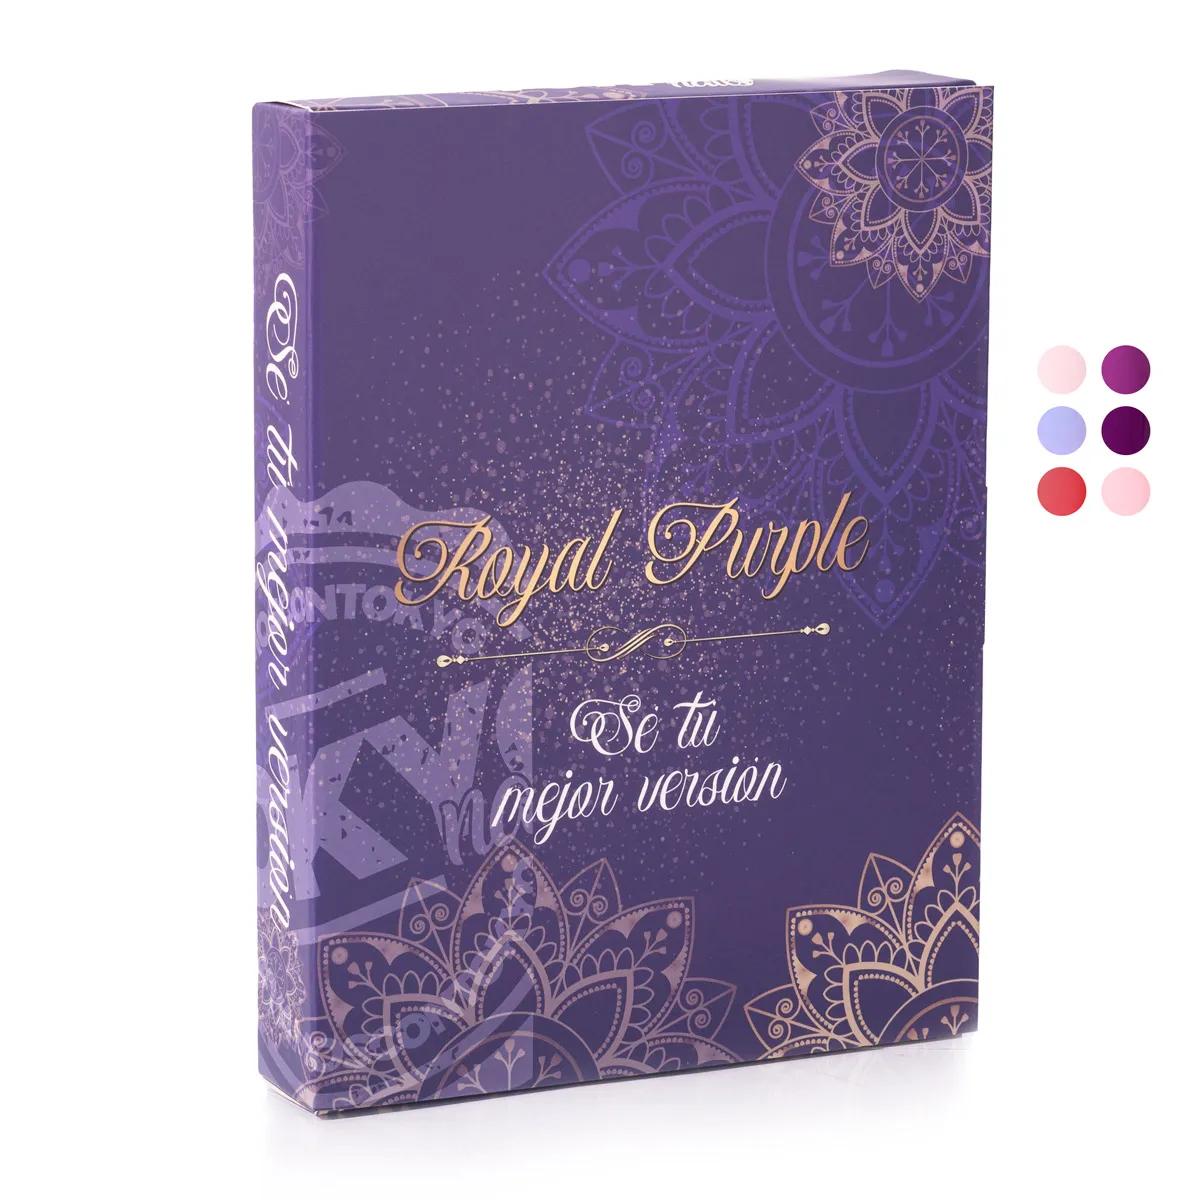 T.Coleccion Royal Purple Gel 6 pzas